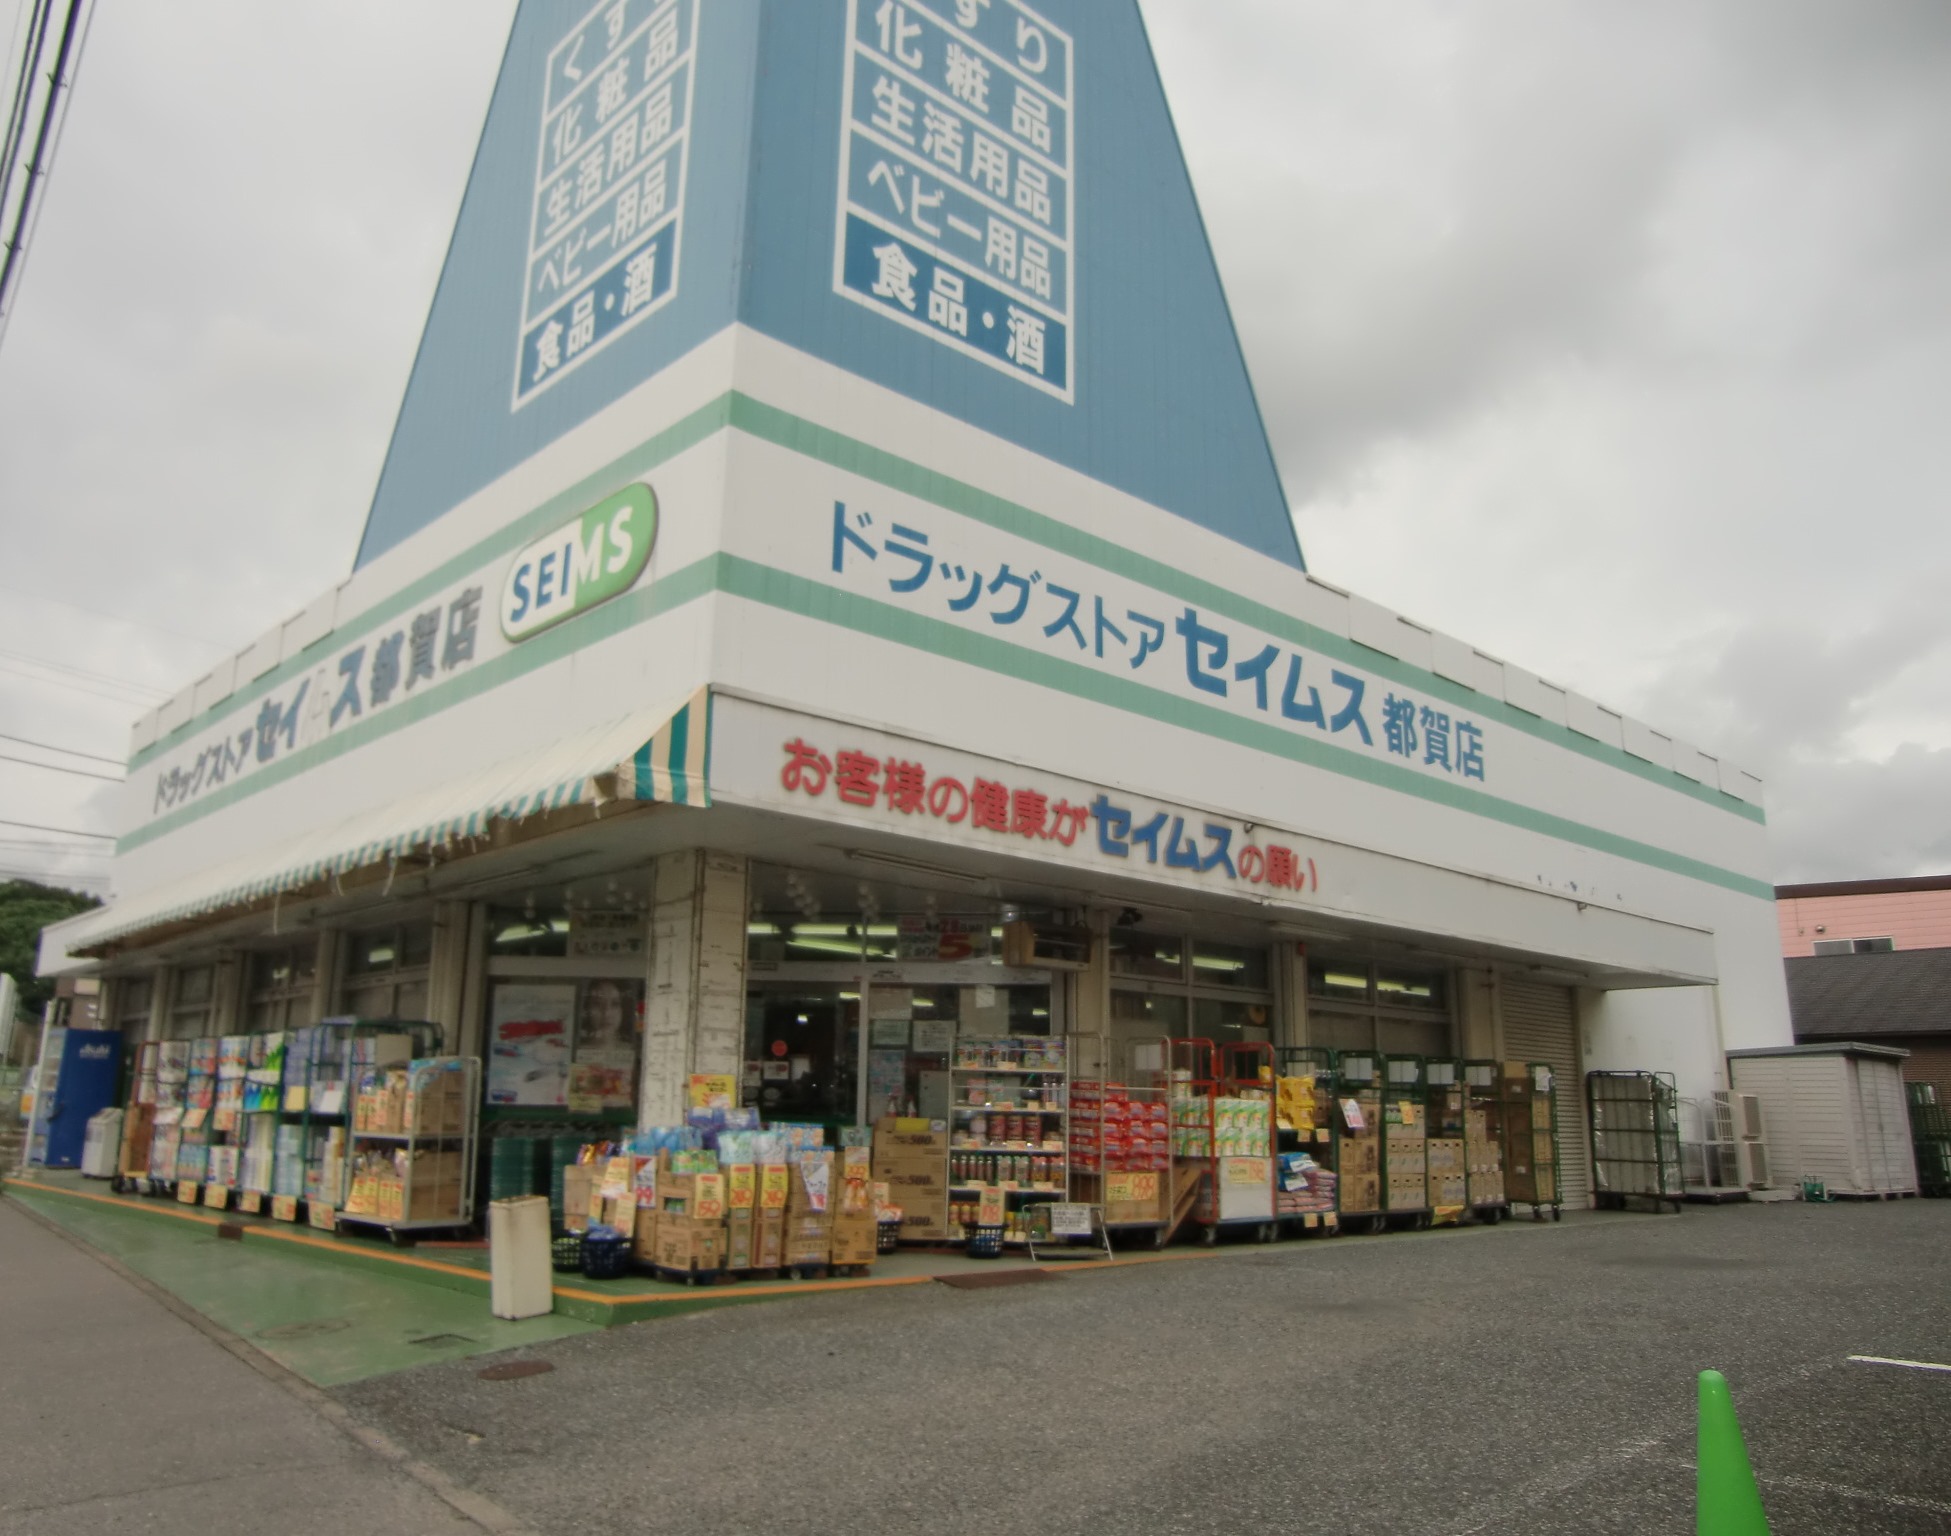 Dorakkusutoa. Drag Seimusu Tsuga shop 434m until (drugstore)